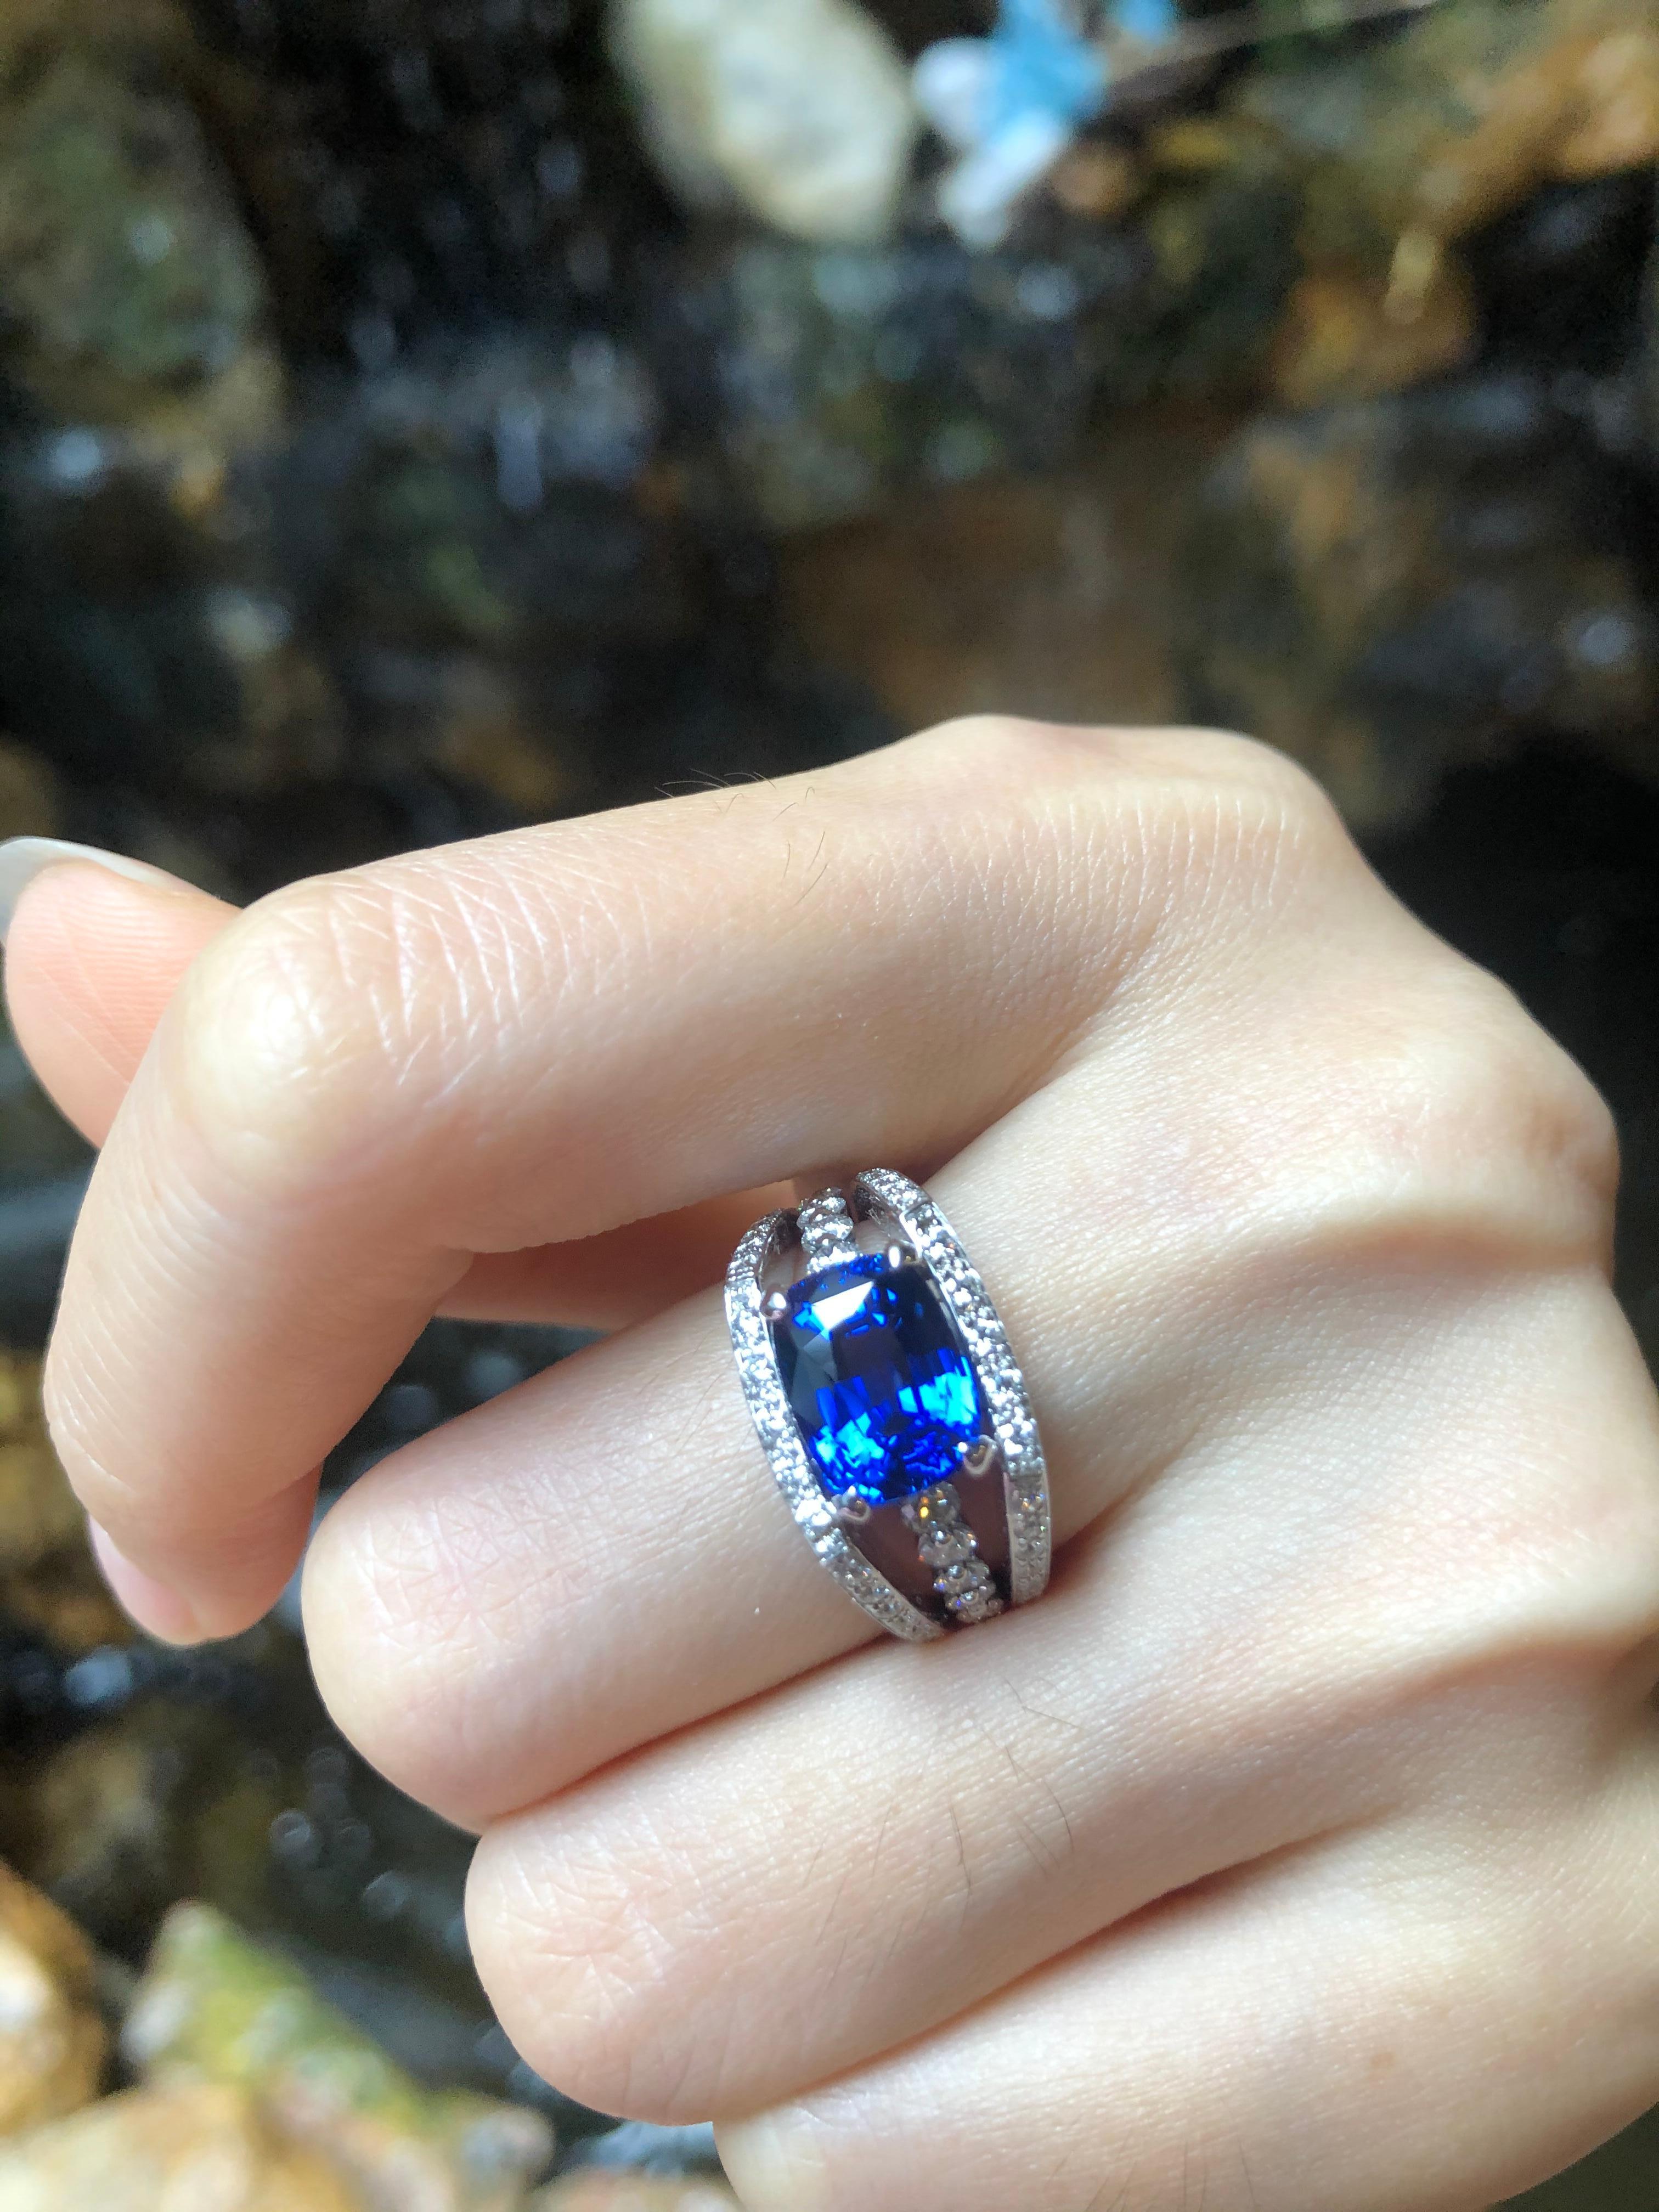 Ceylon Blauer Saphir 4,33 Karat mit Diamant 1,01 Karat Ring in 18 Karat Weißgold gefasst
(GIT-zertifiziert, das Edelstein- und Schmuckinstitut von Thailand)

Breite:  1.0 cm 
Länge: 1,0 cm
Ringgröße: 52
Gesamtgewicht: 12,03 Gramm

